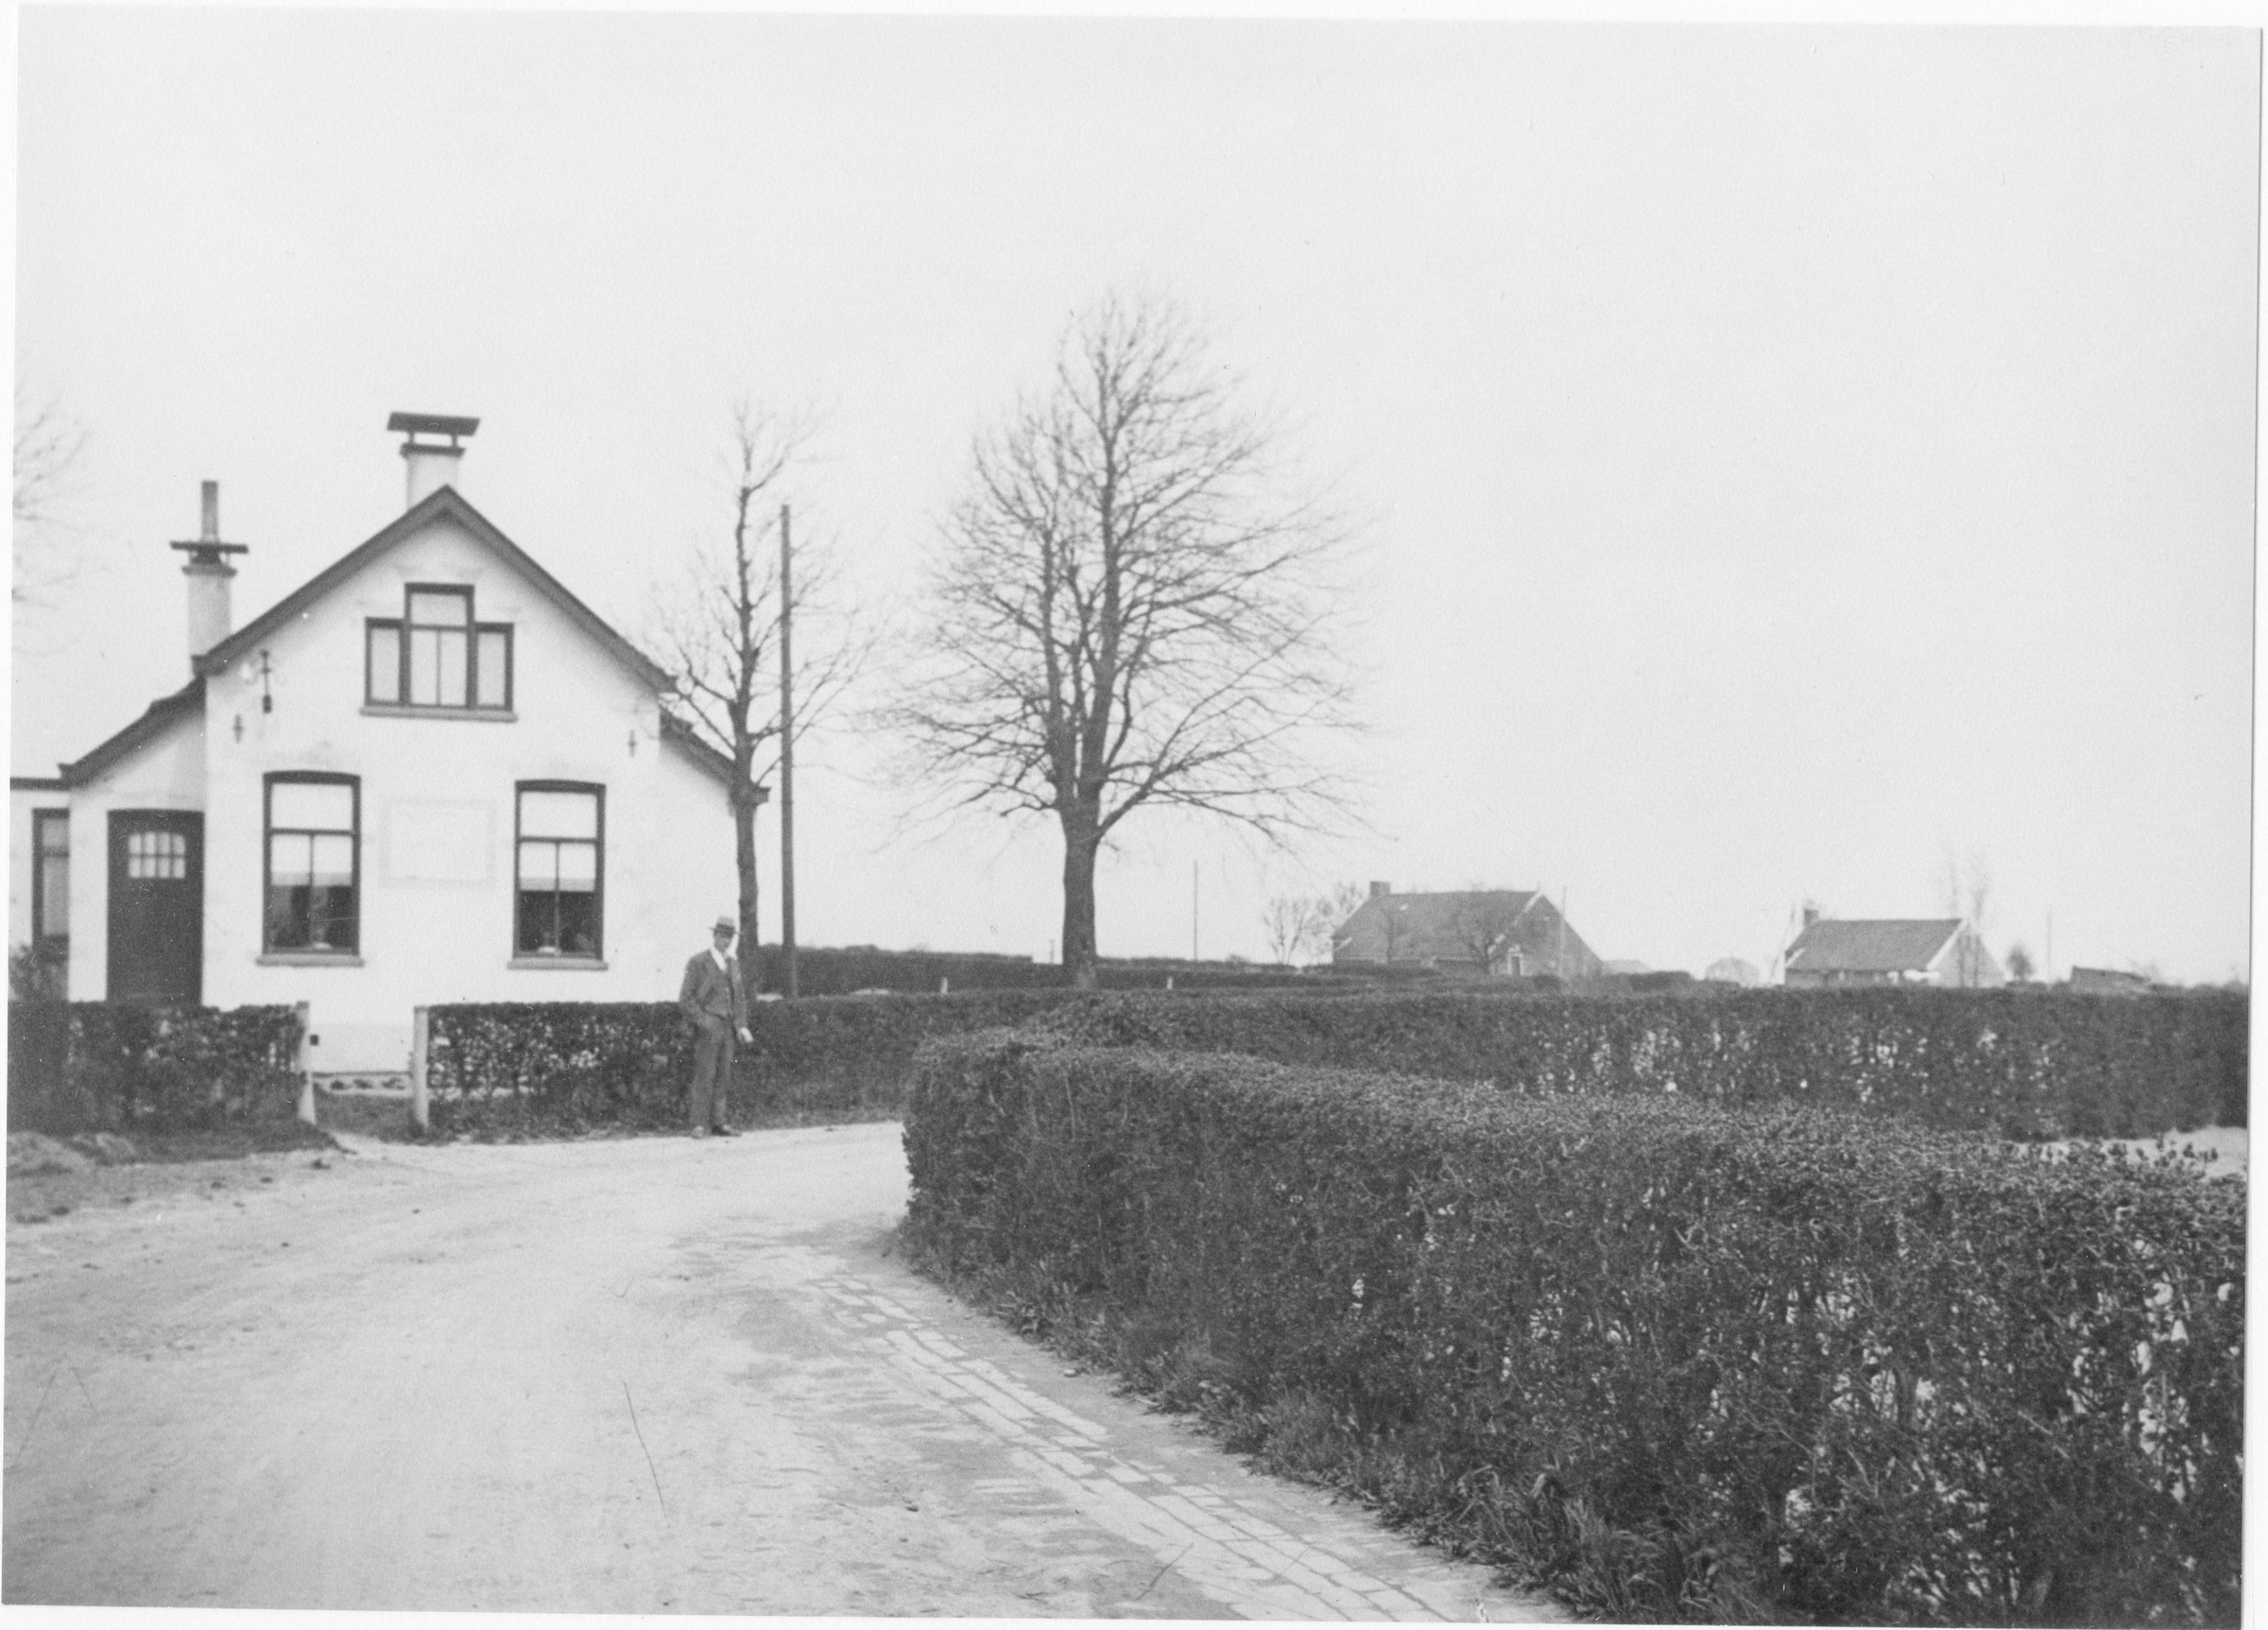 Arbeidershuizen aan de Polderweg in de Oostwolderpolder gezien vanaf Oostwold, vóór de bestrating van de weg. Gedateerd: 1928. Bron: Beeldbank Groninger Archieven.